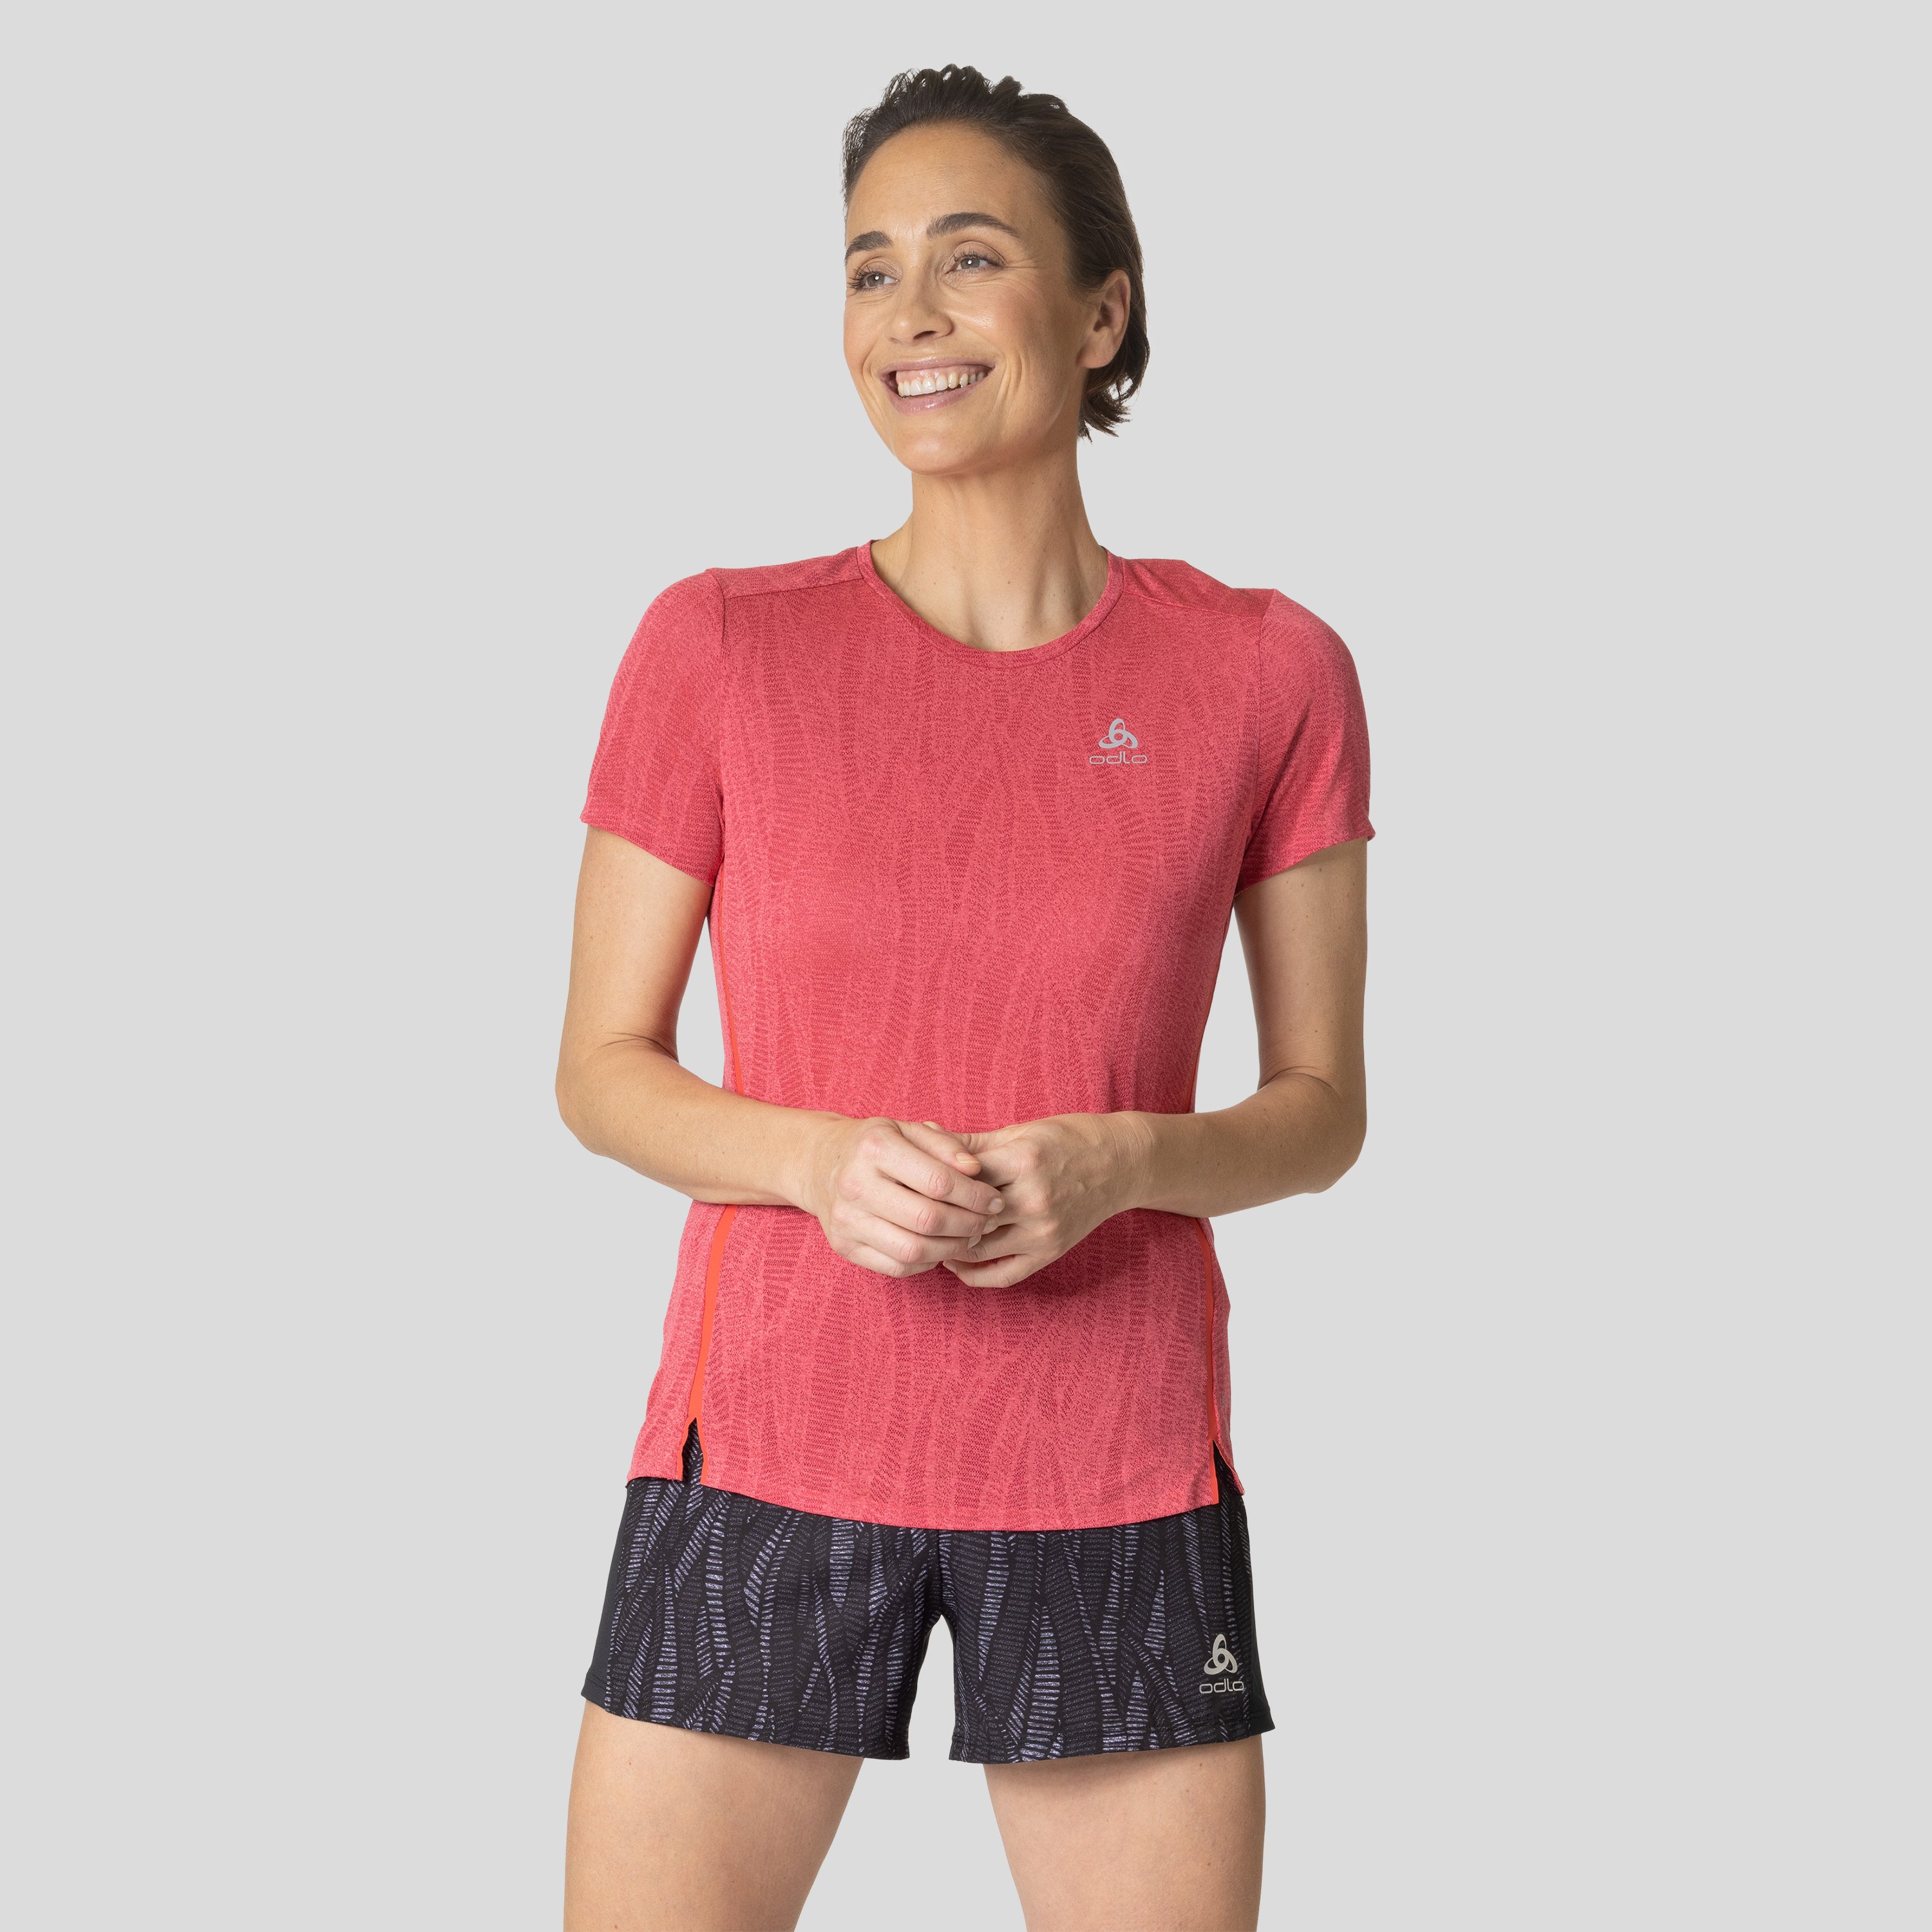 ODLO Zeroweight Engineered Chill-Tec Laufshirt für Damen, L, rot